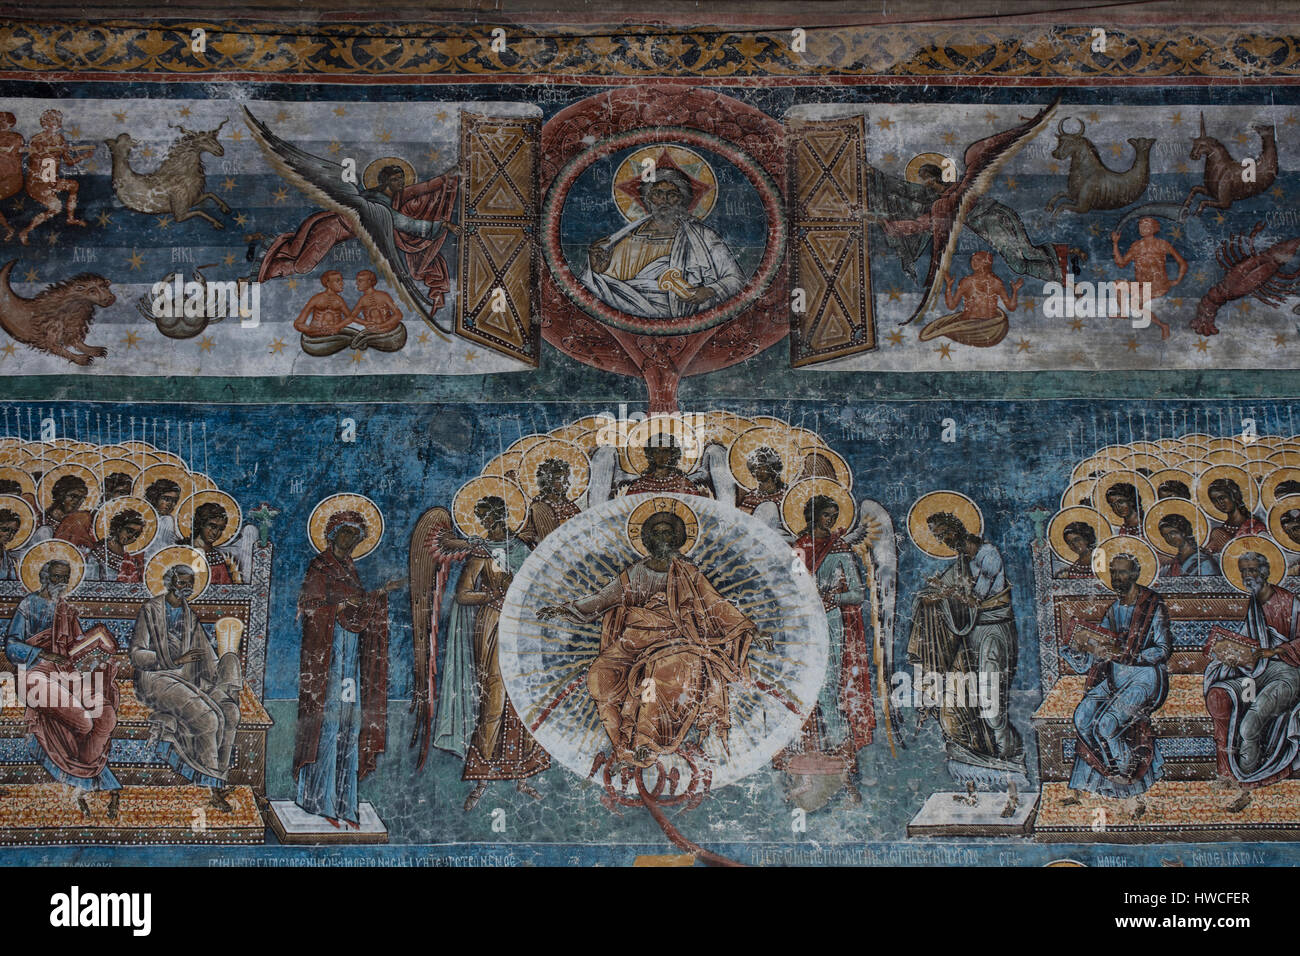 Fuera fresco a Jesús como juez en el Juicio Final, el monasterio de Voronet, Iglesia de Moldavia, Bucovina, Rumania Foto de stock